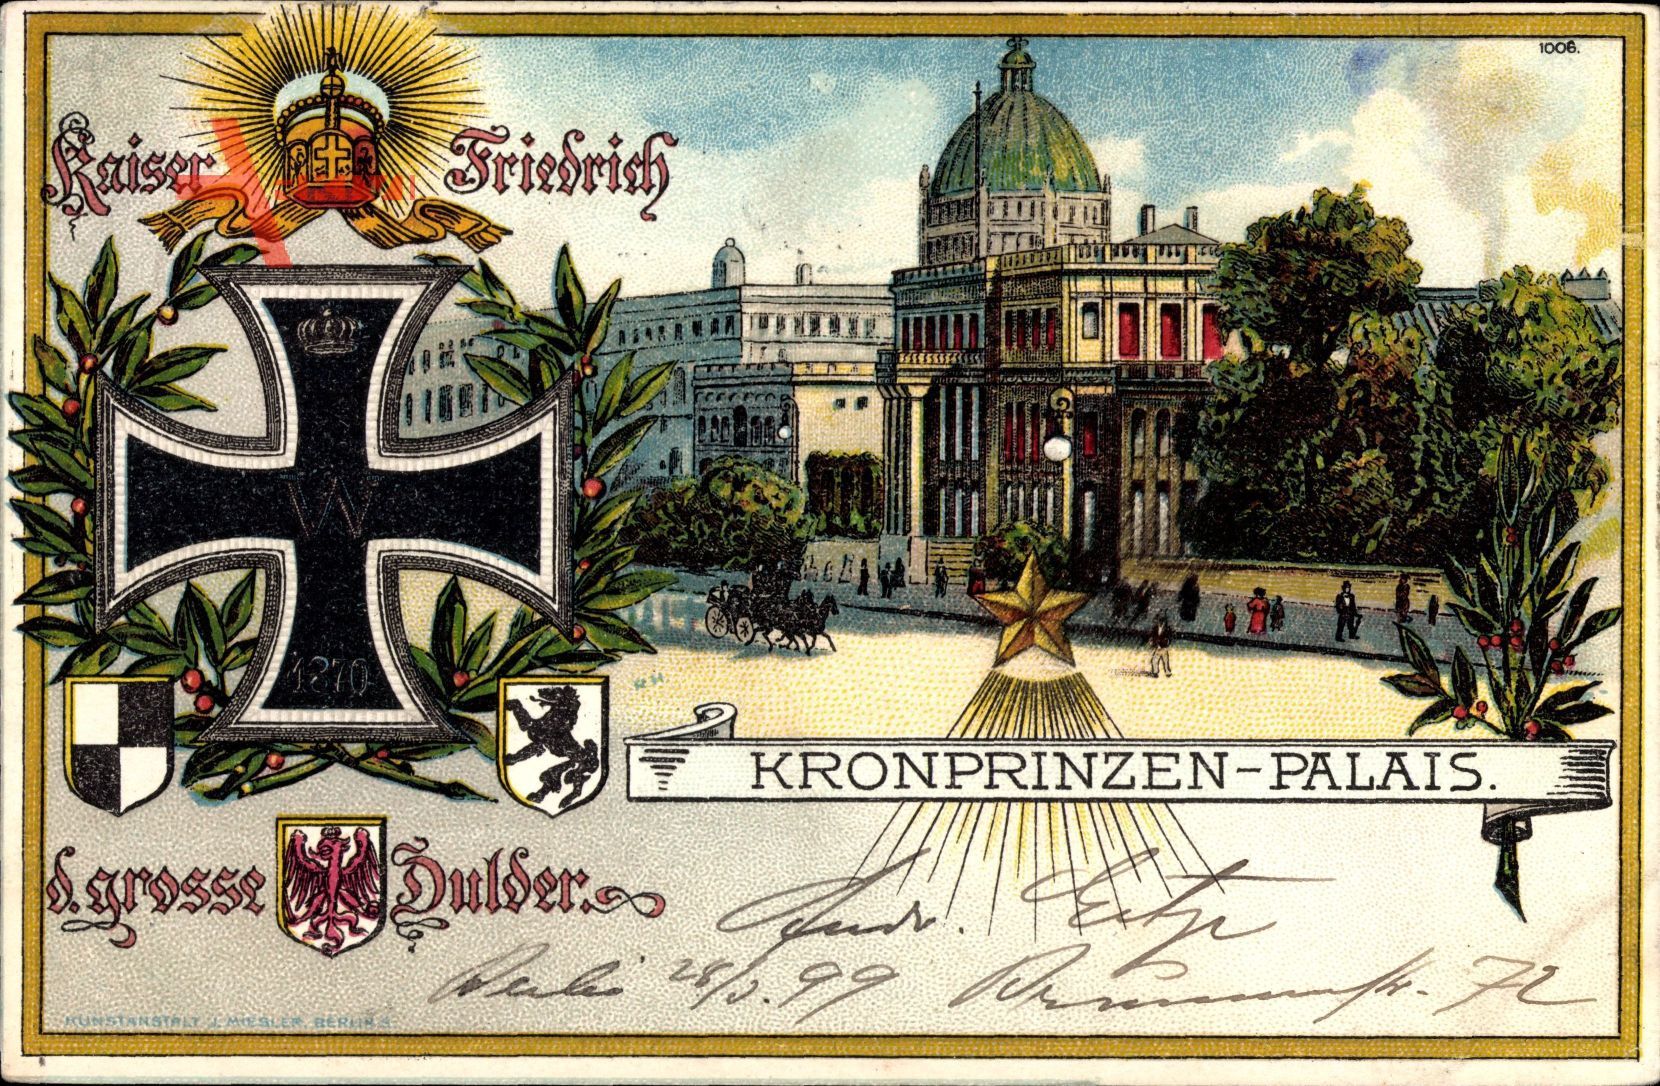 Berlin, Kronprinzen Palais, Eisernes Kreuz, Wappen